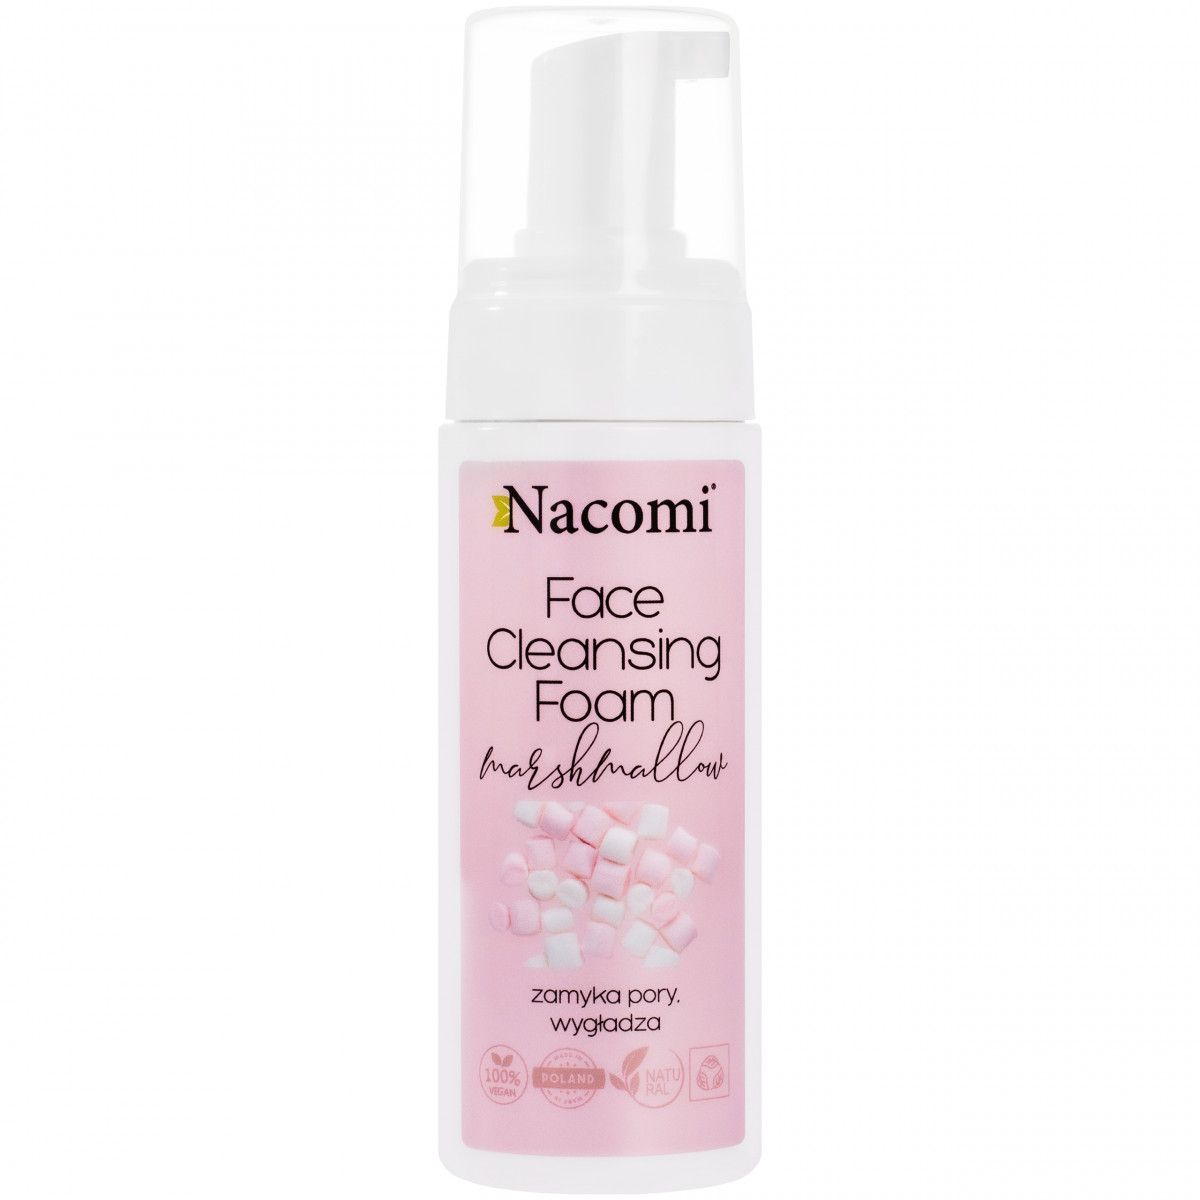 Nacomi Face Cleansing Foam Marshmallow - lekka, kojąca pianka do mycia twarzy 150ml